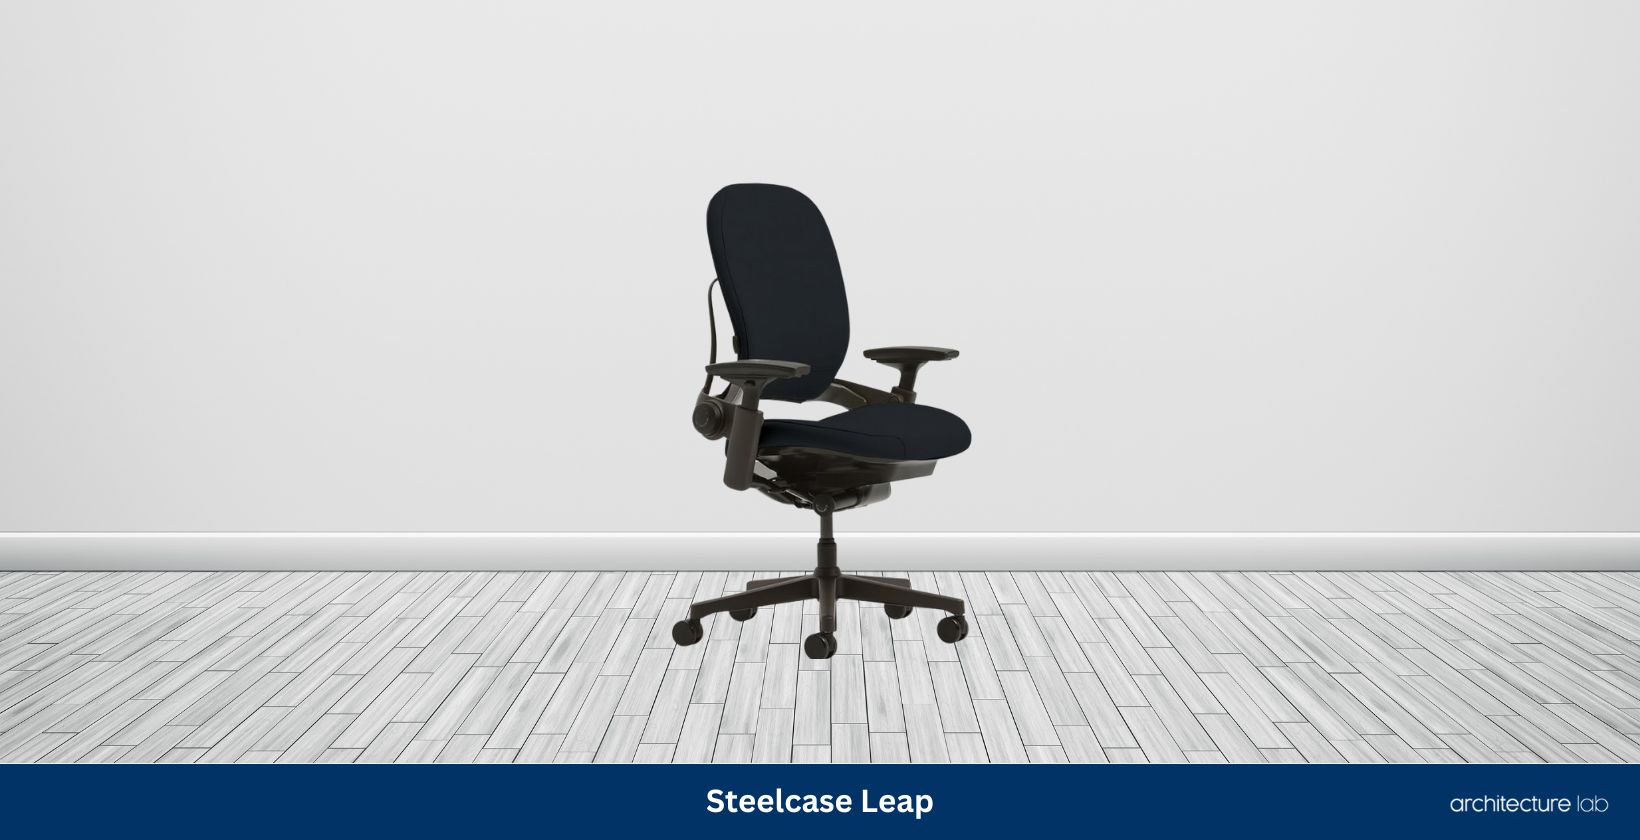 Steelcase leap